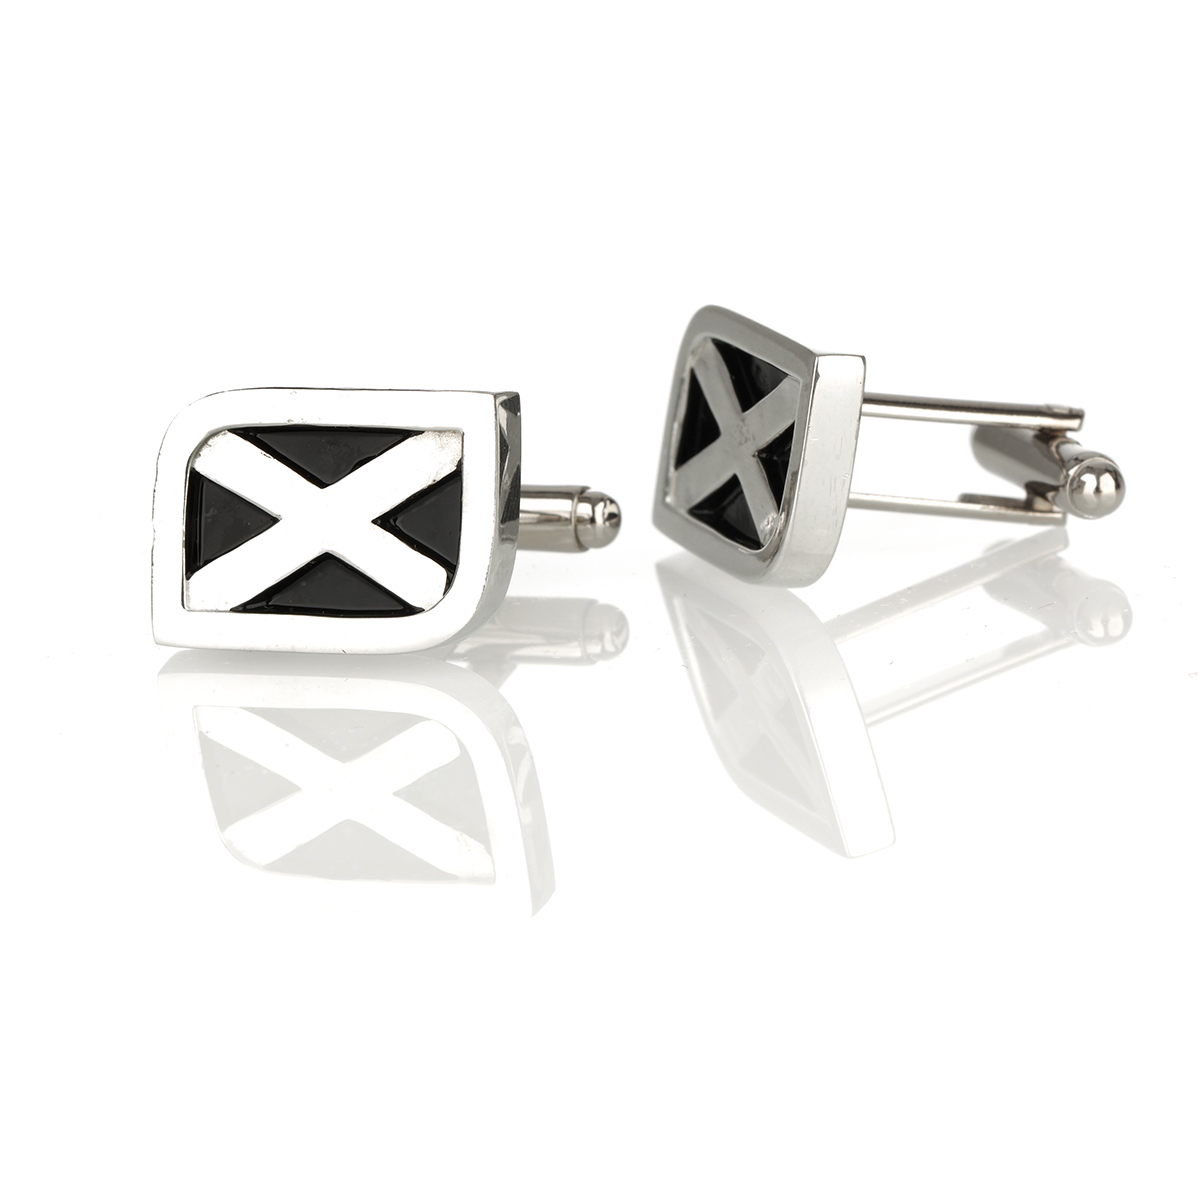 Scottish Saltire Cufflinks - Polierte Manschettenknöpfe mit schottischer Flagge